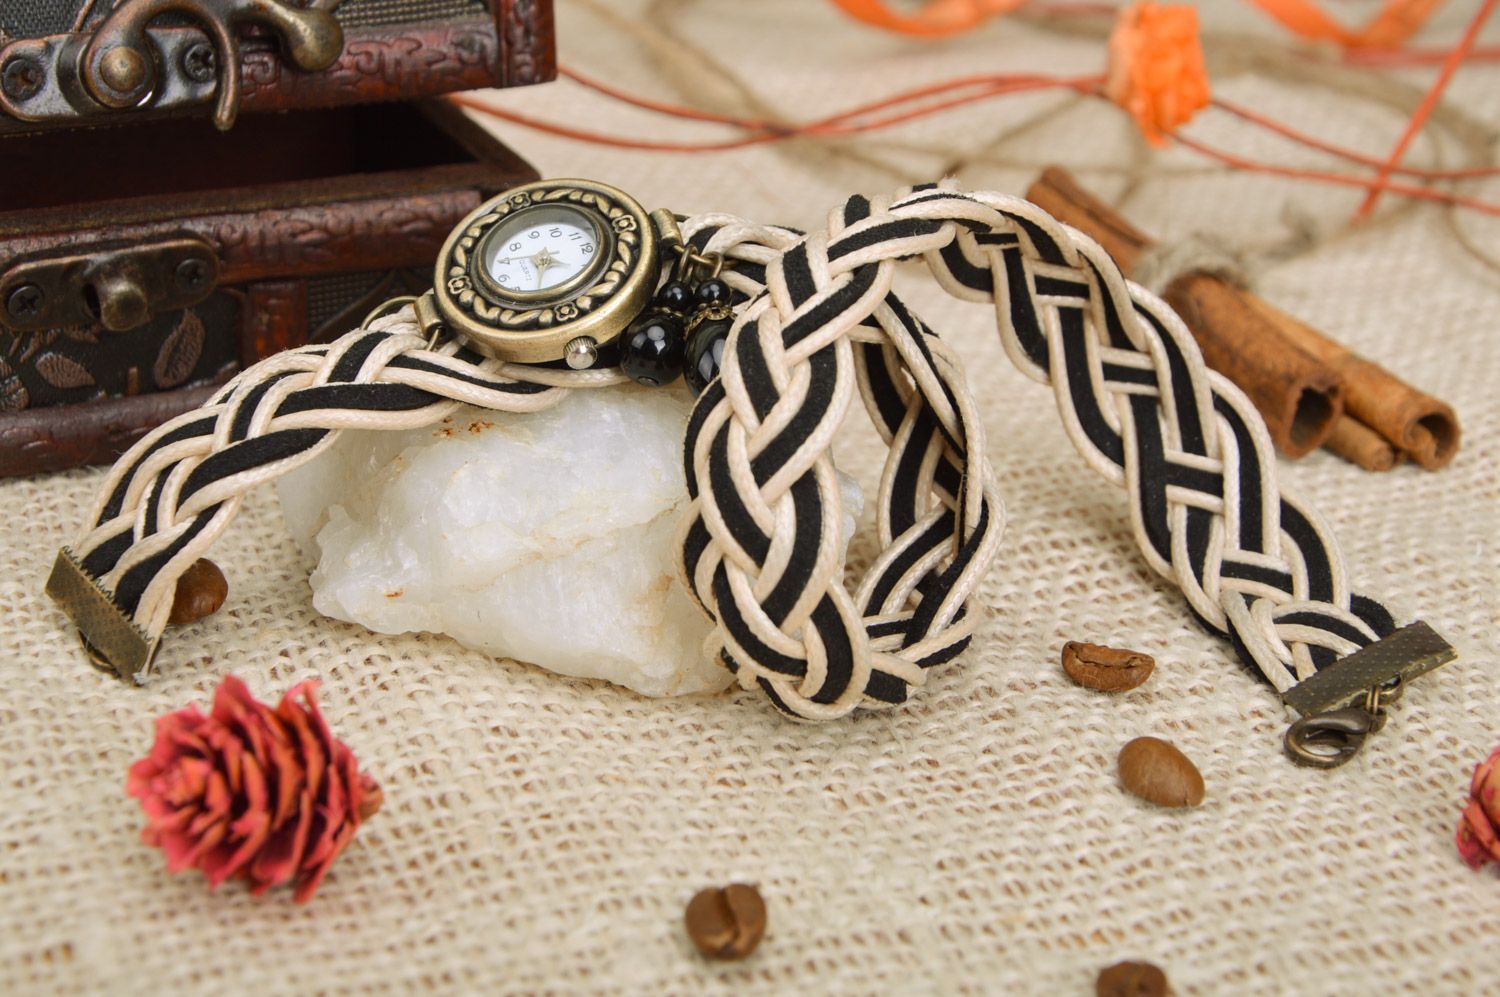 Красивые часы наручные плетеные в бежево-черном цвете ручной работы в два ряда фото 1